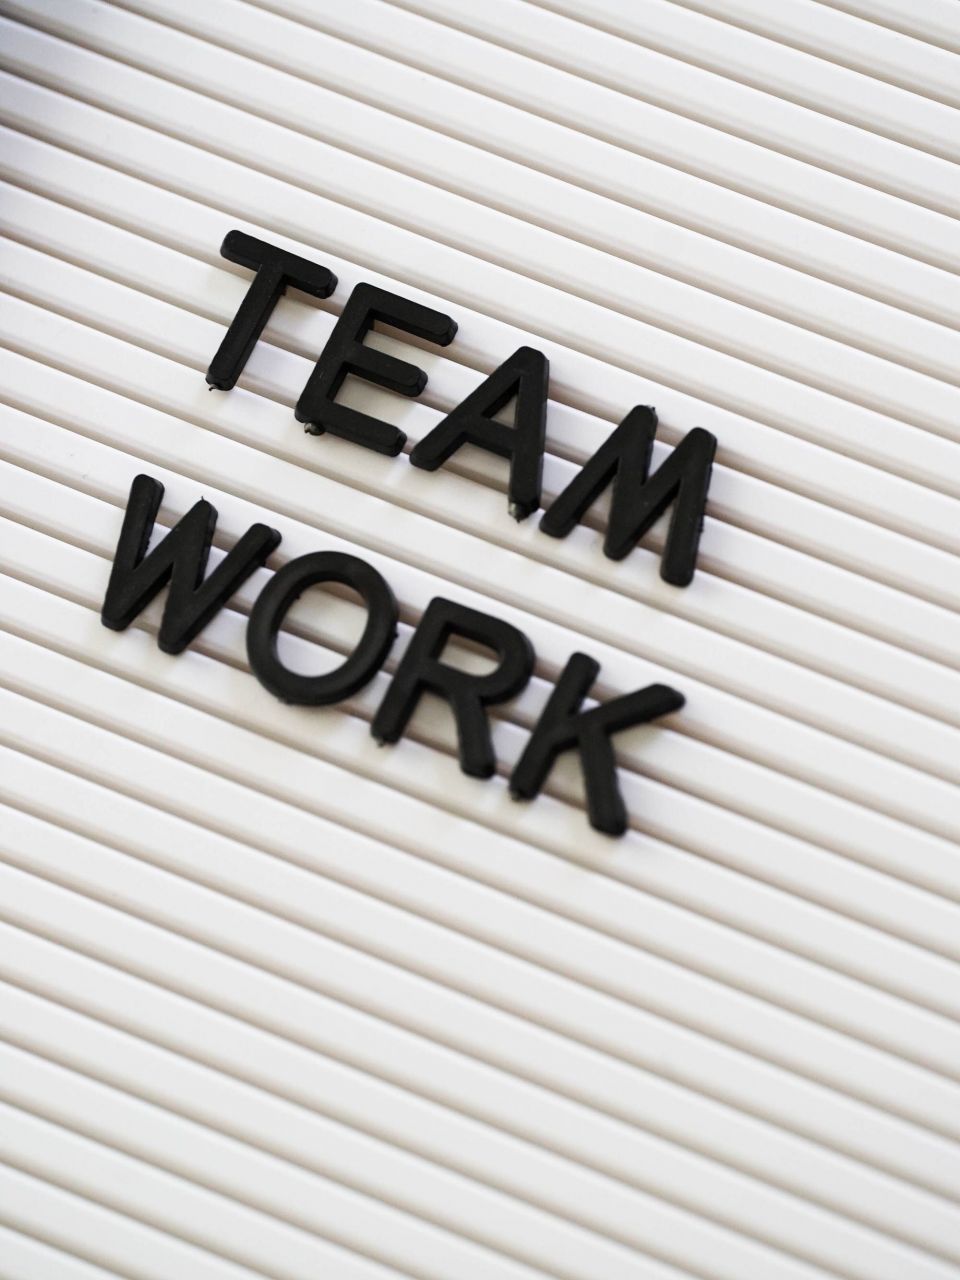 Das Bild zeigt einen weißen Hintergrund, auf dem der Schriftzug „Teamwork“ in 3D aufgesteckt ist. Dieses Bild symbolisierte die Zusammenarbeit mit dem AAT-Marketingteam hinsichtlich gemeinsamer Werbung. 